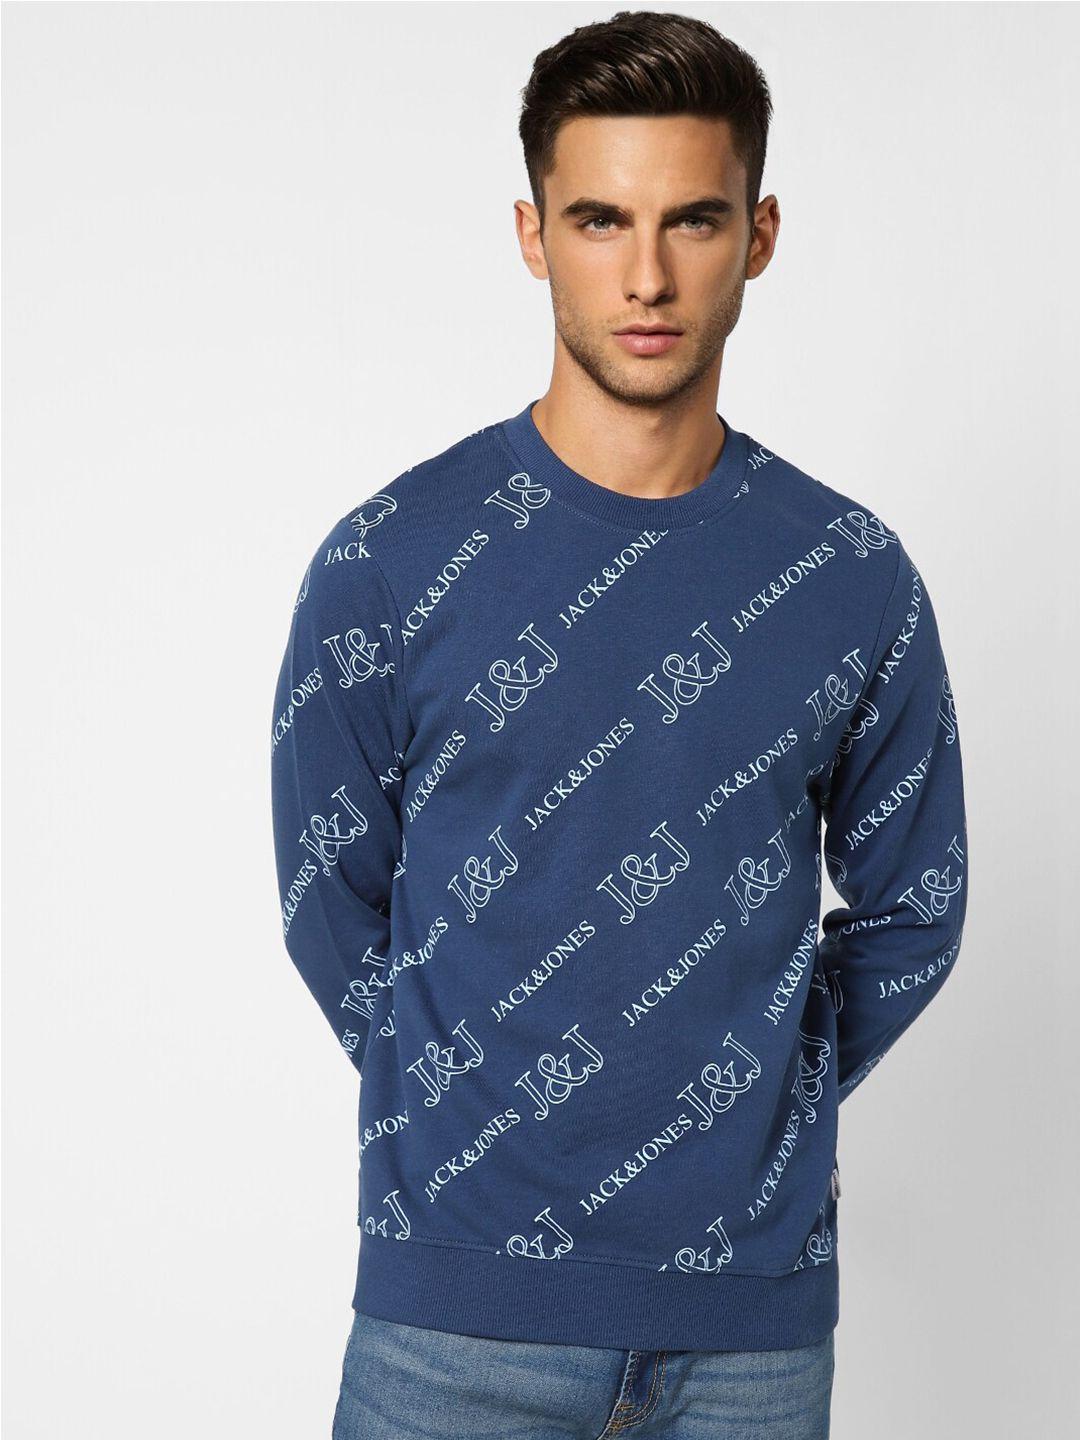 jack-&-jones-men-blue-printed-cotton-sweatshirt